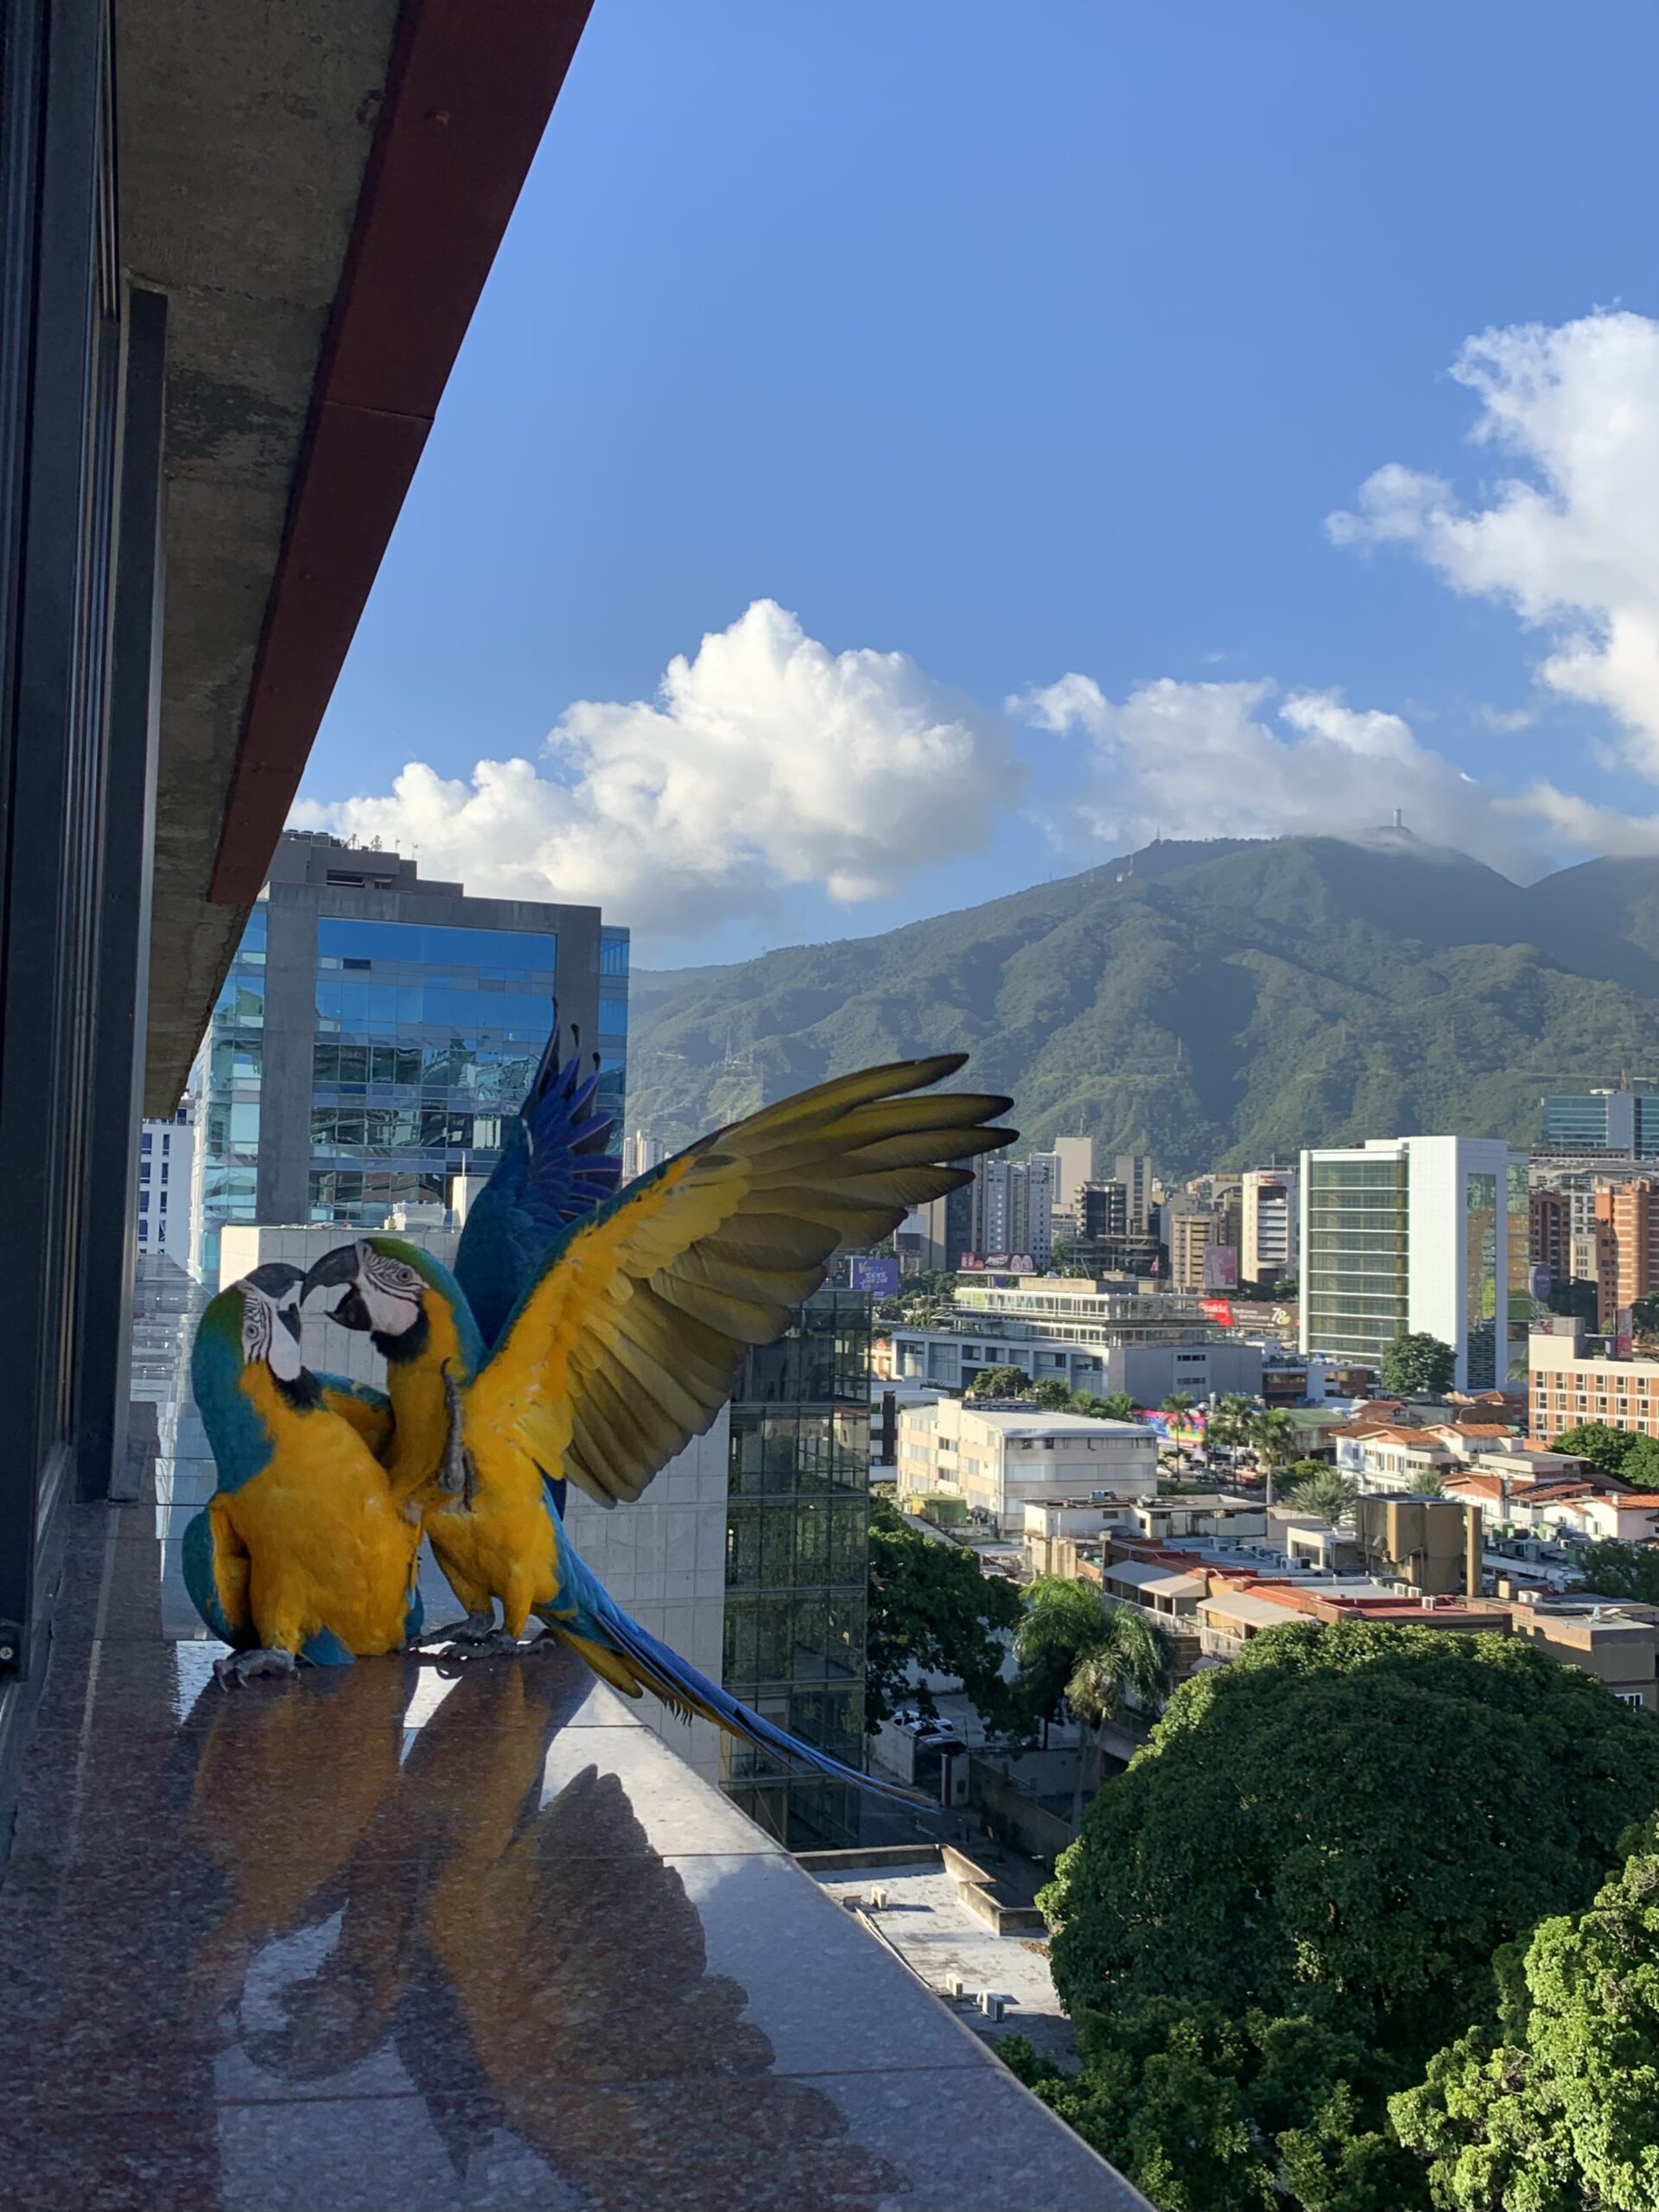 Caracas Ciudad de Guacamayas